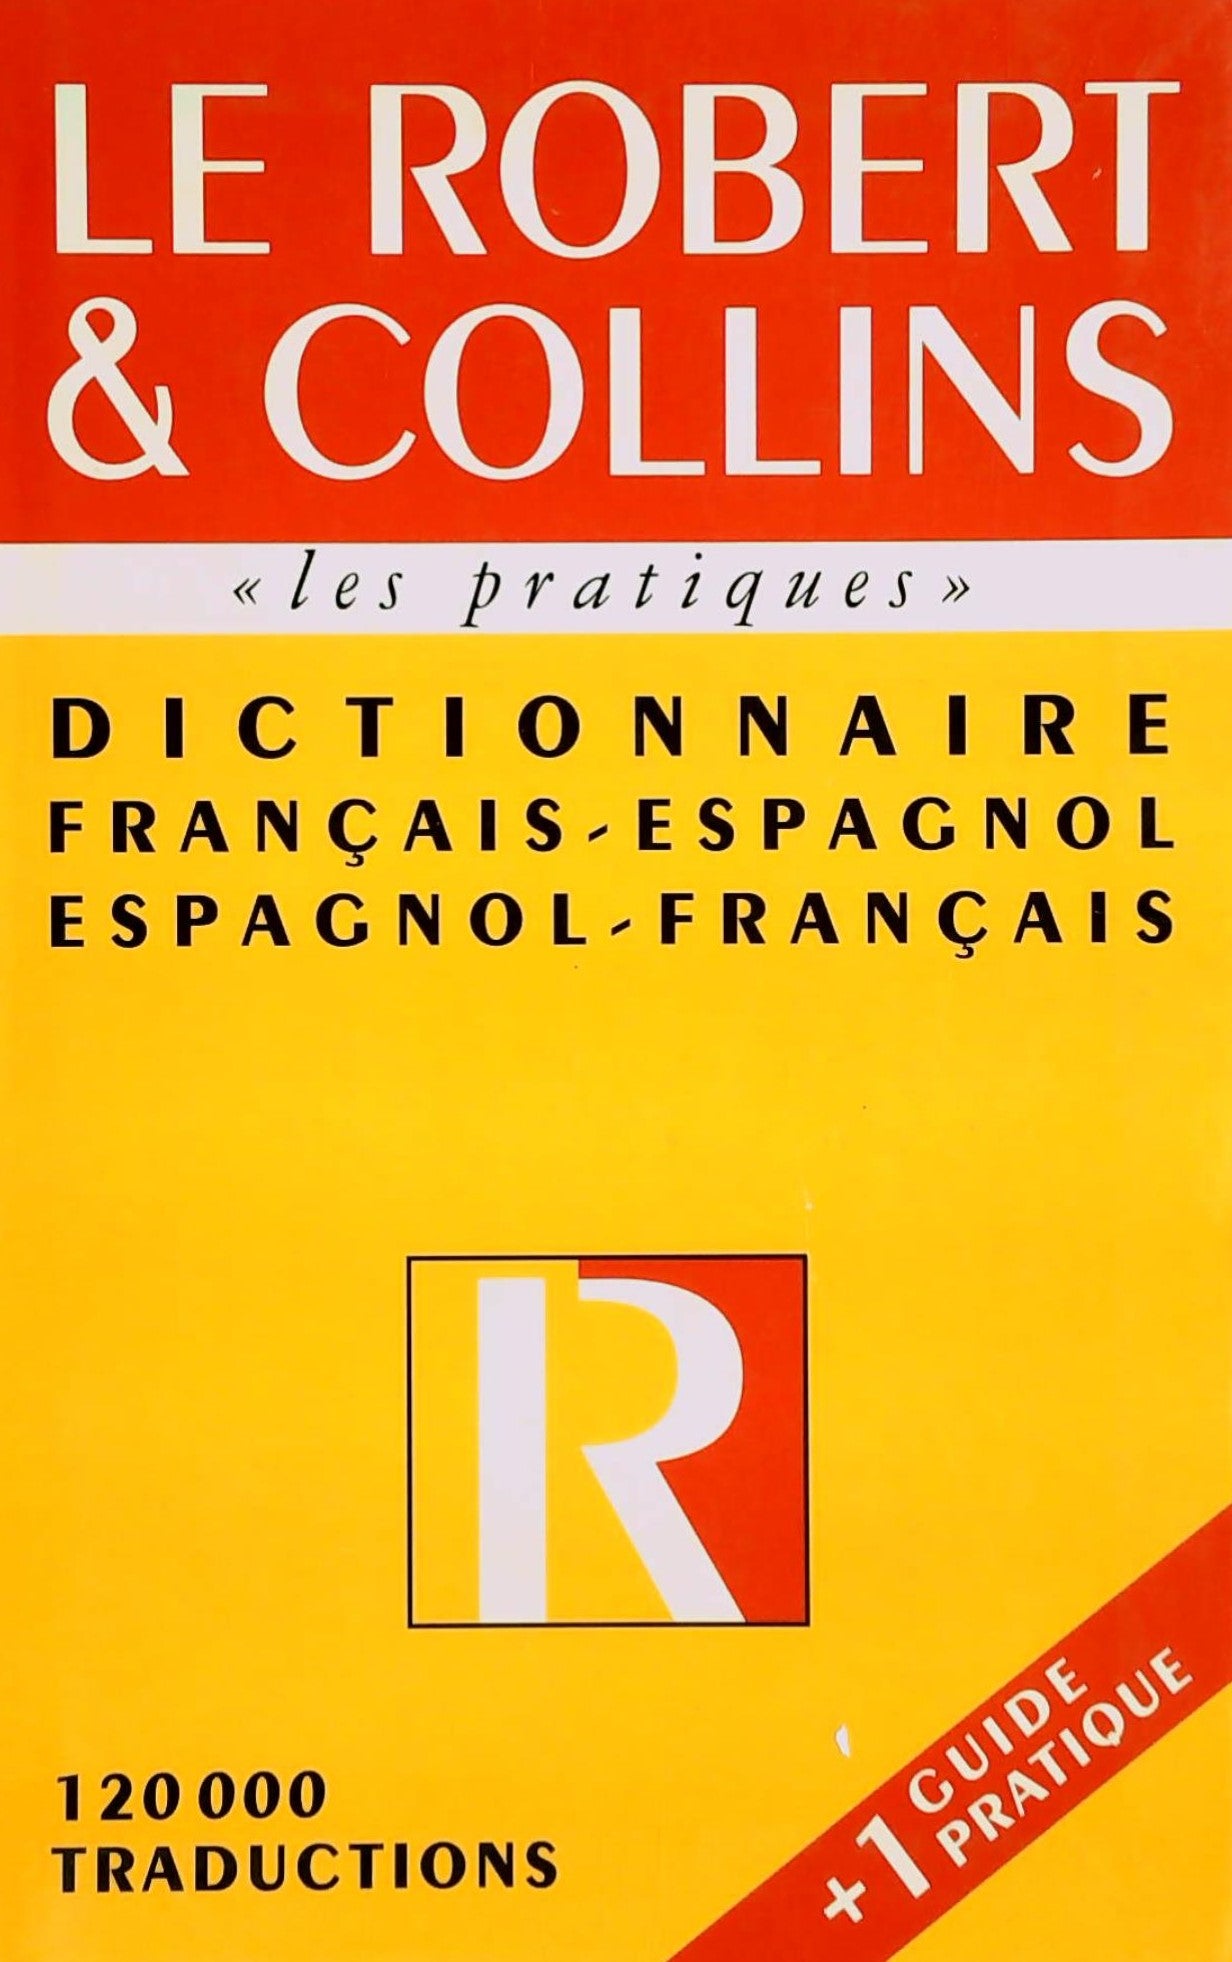 Livre ISBN 2850365890 Le Robert & Collins : Dictionnaire français-espagnol, espagnol-français